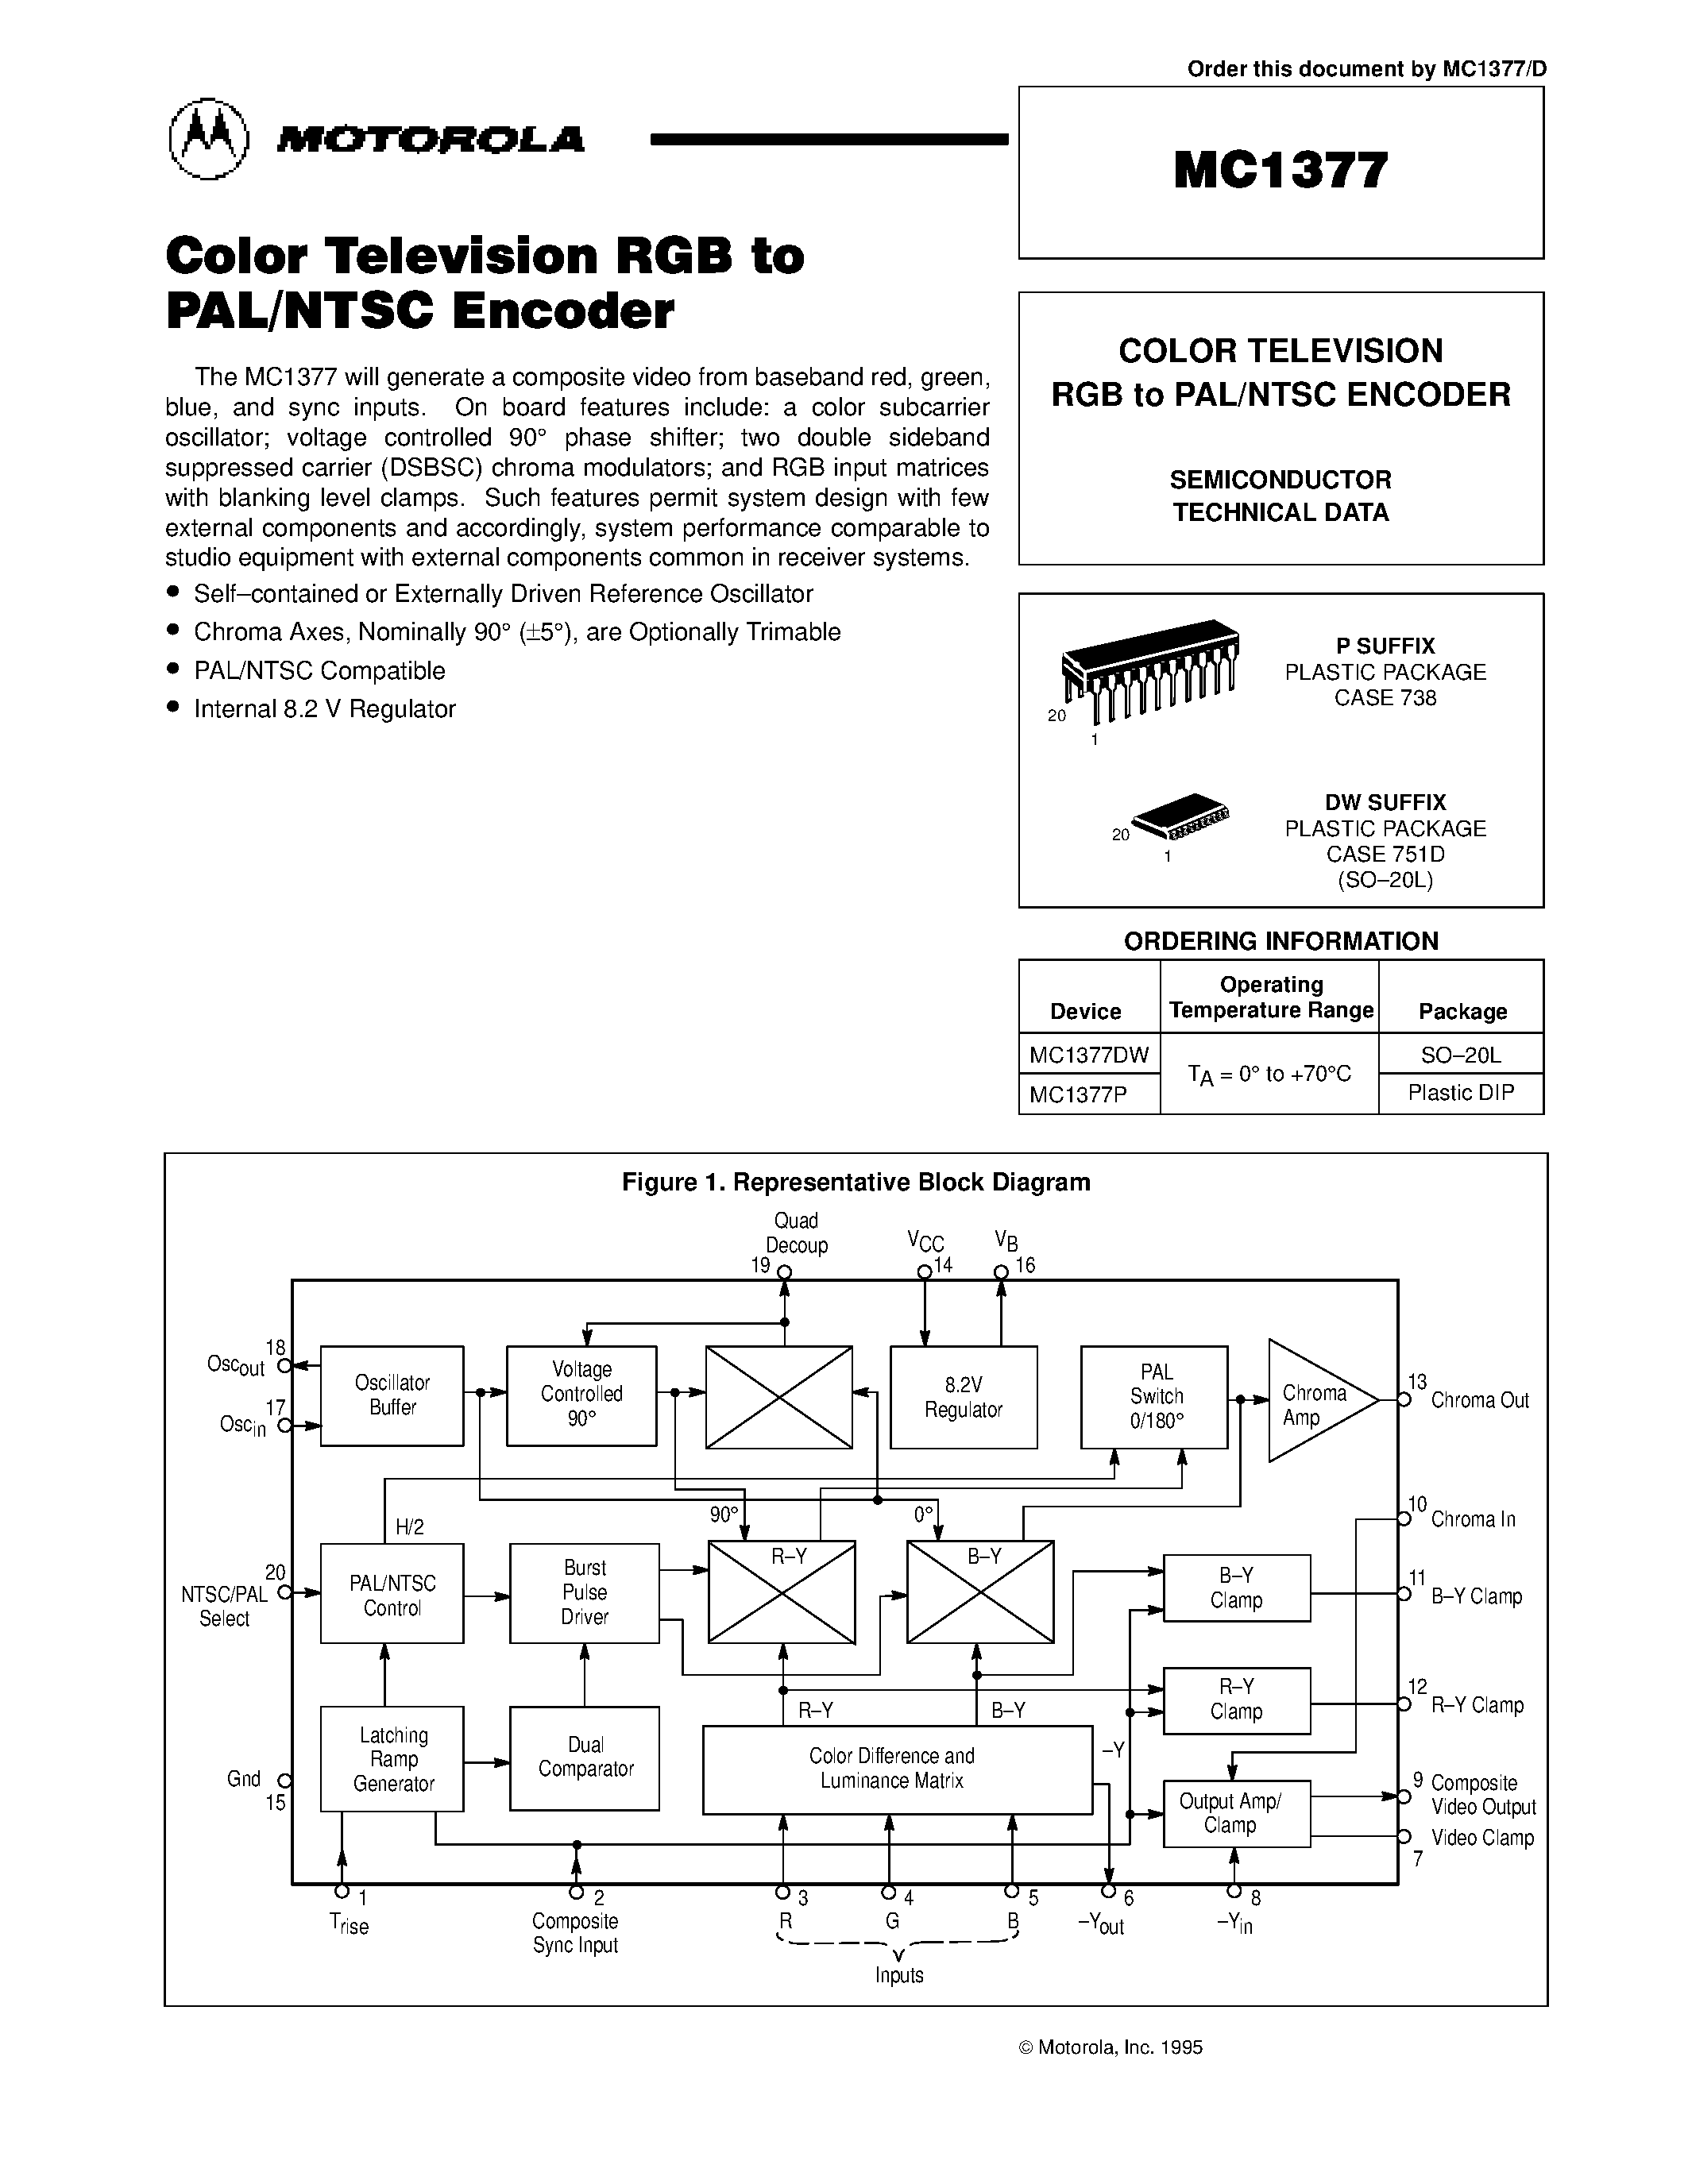 Datasheet MC1377DW - COLOR TELEVISION RGB to PAL/NTSC ENCODER page 1